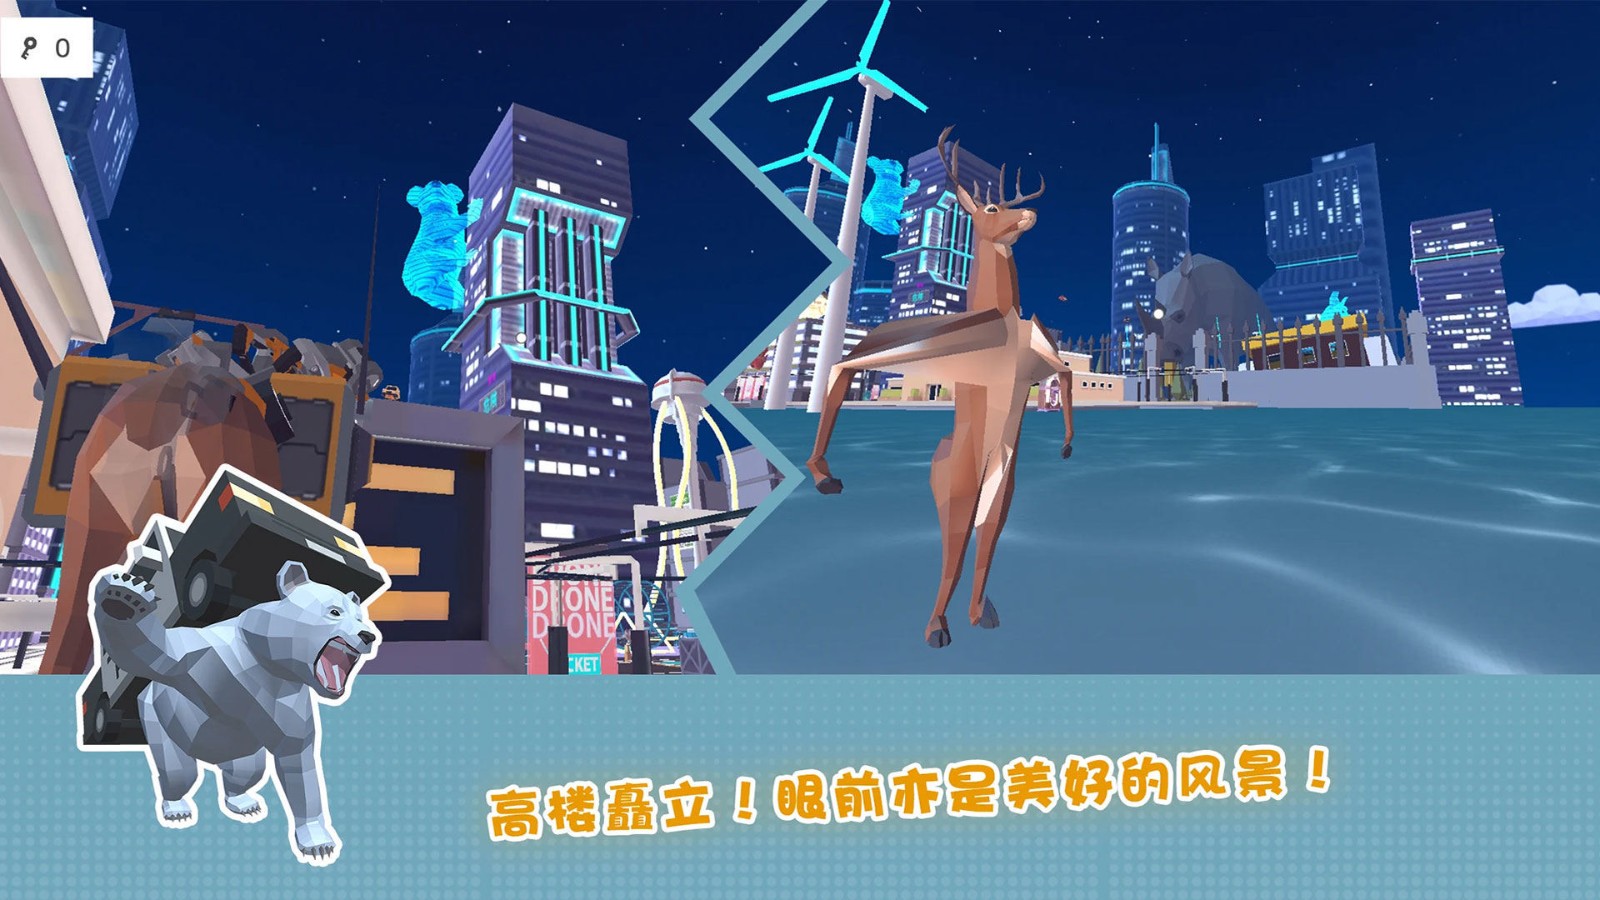 傻狍子在城市游戏中文版下载-傻狍子在城市游戏纯净版安卓最新下载v300.1.0.3018图1